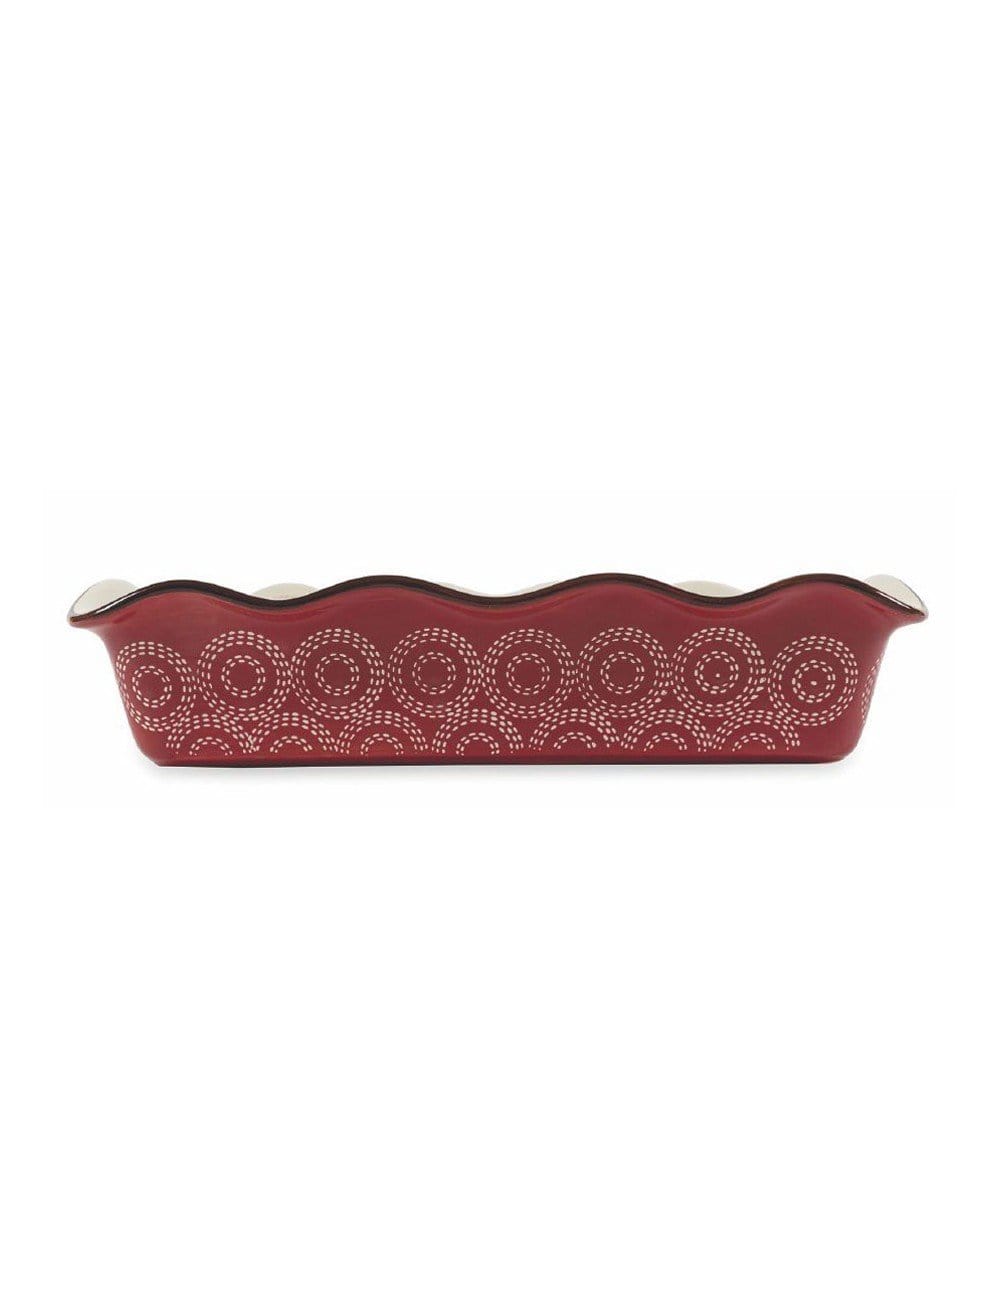 Teglia rettangolare stampo in ceramica bianca e rossa 21 x 12 cm con decorazioni - Dolci pensieri gift